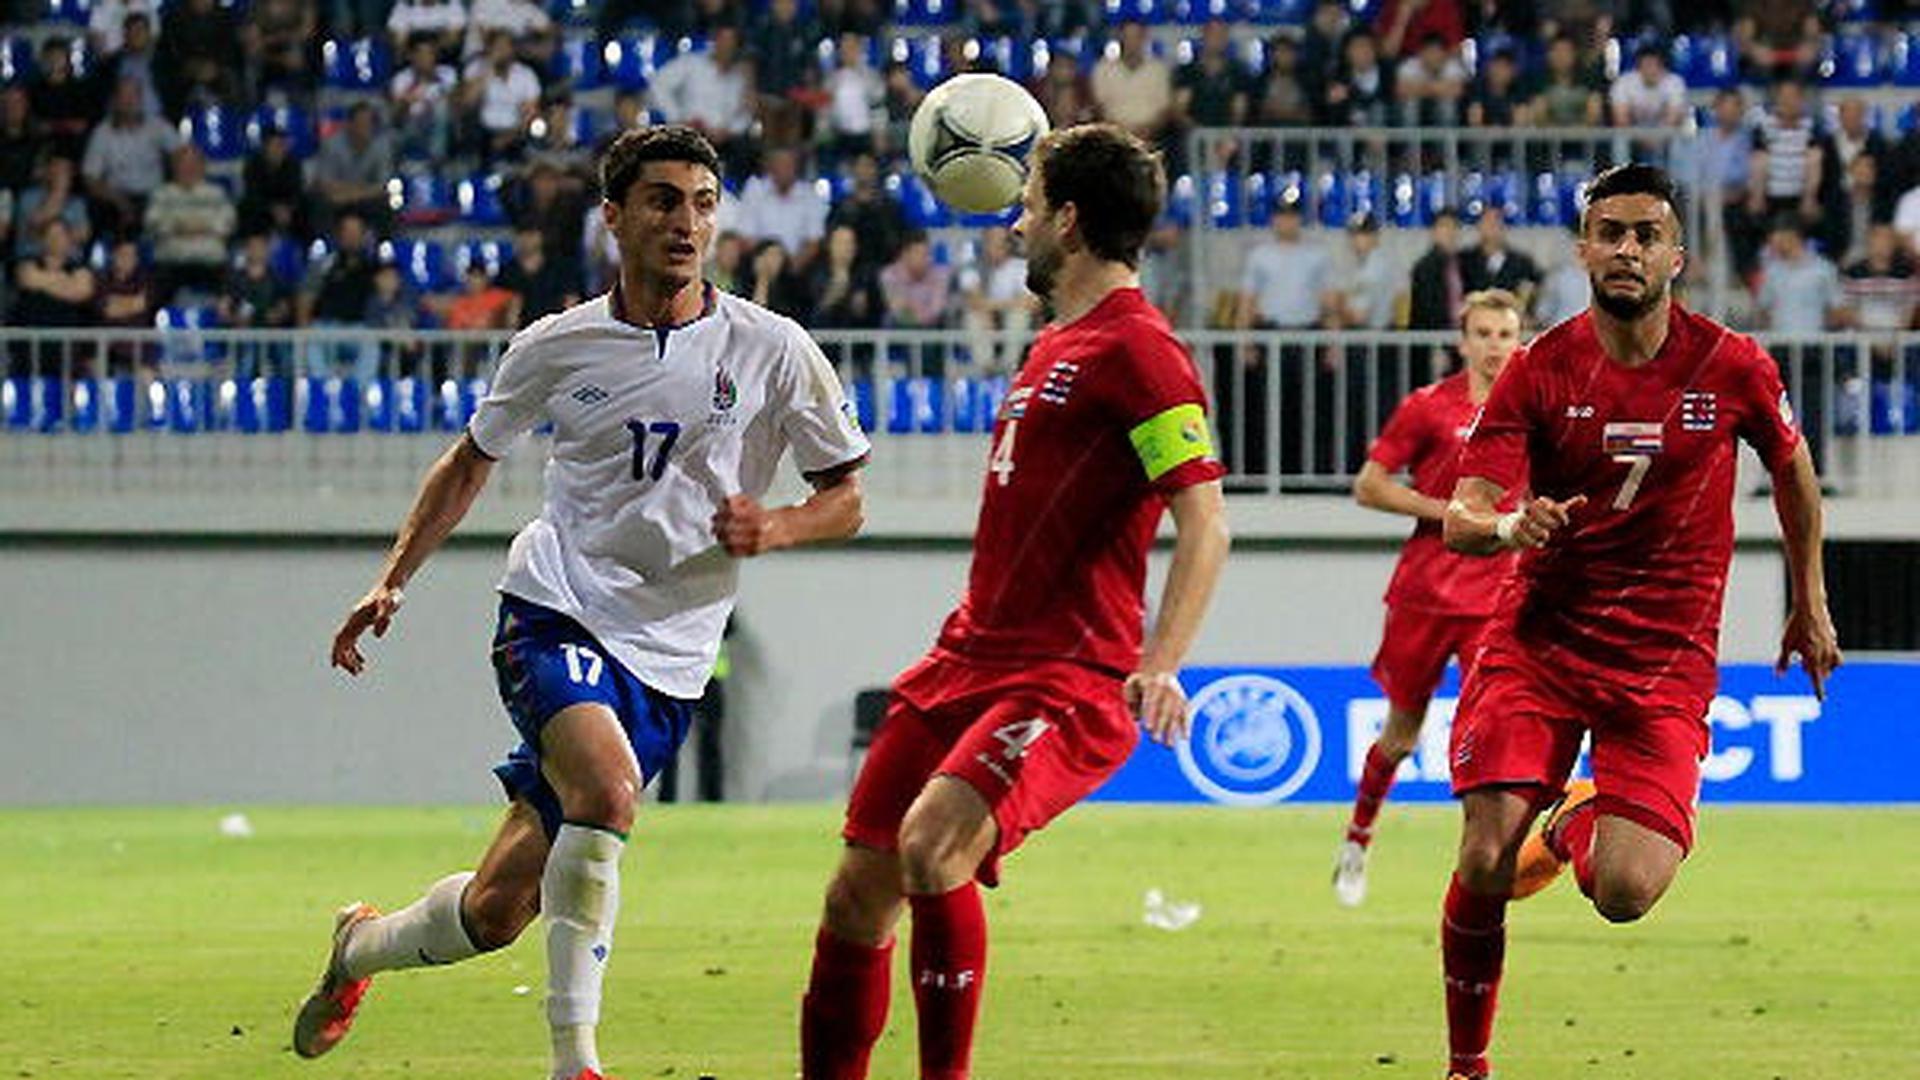 A selecção luxemburguesa conseguiu um empate positivo contra o Azerbaijão